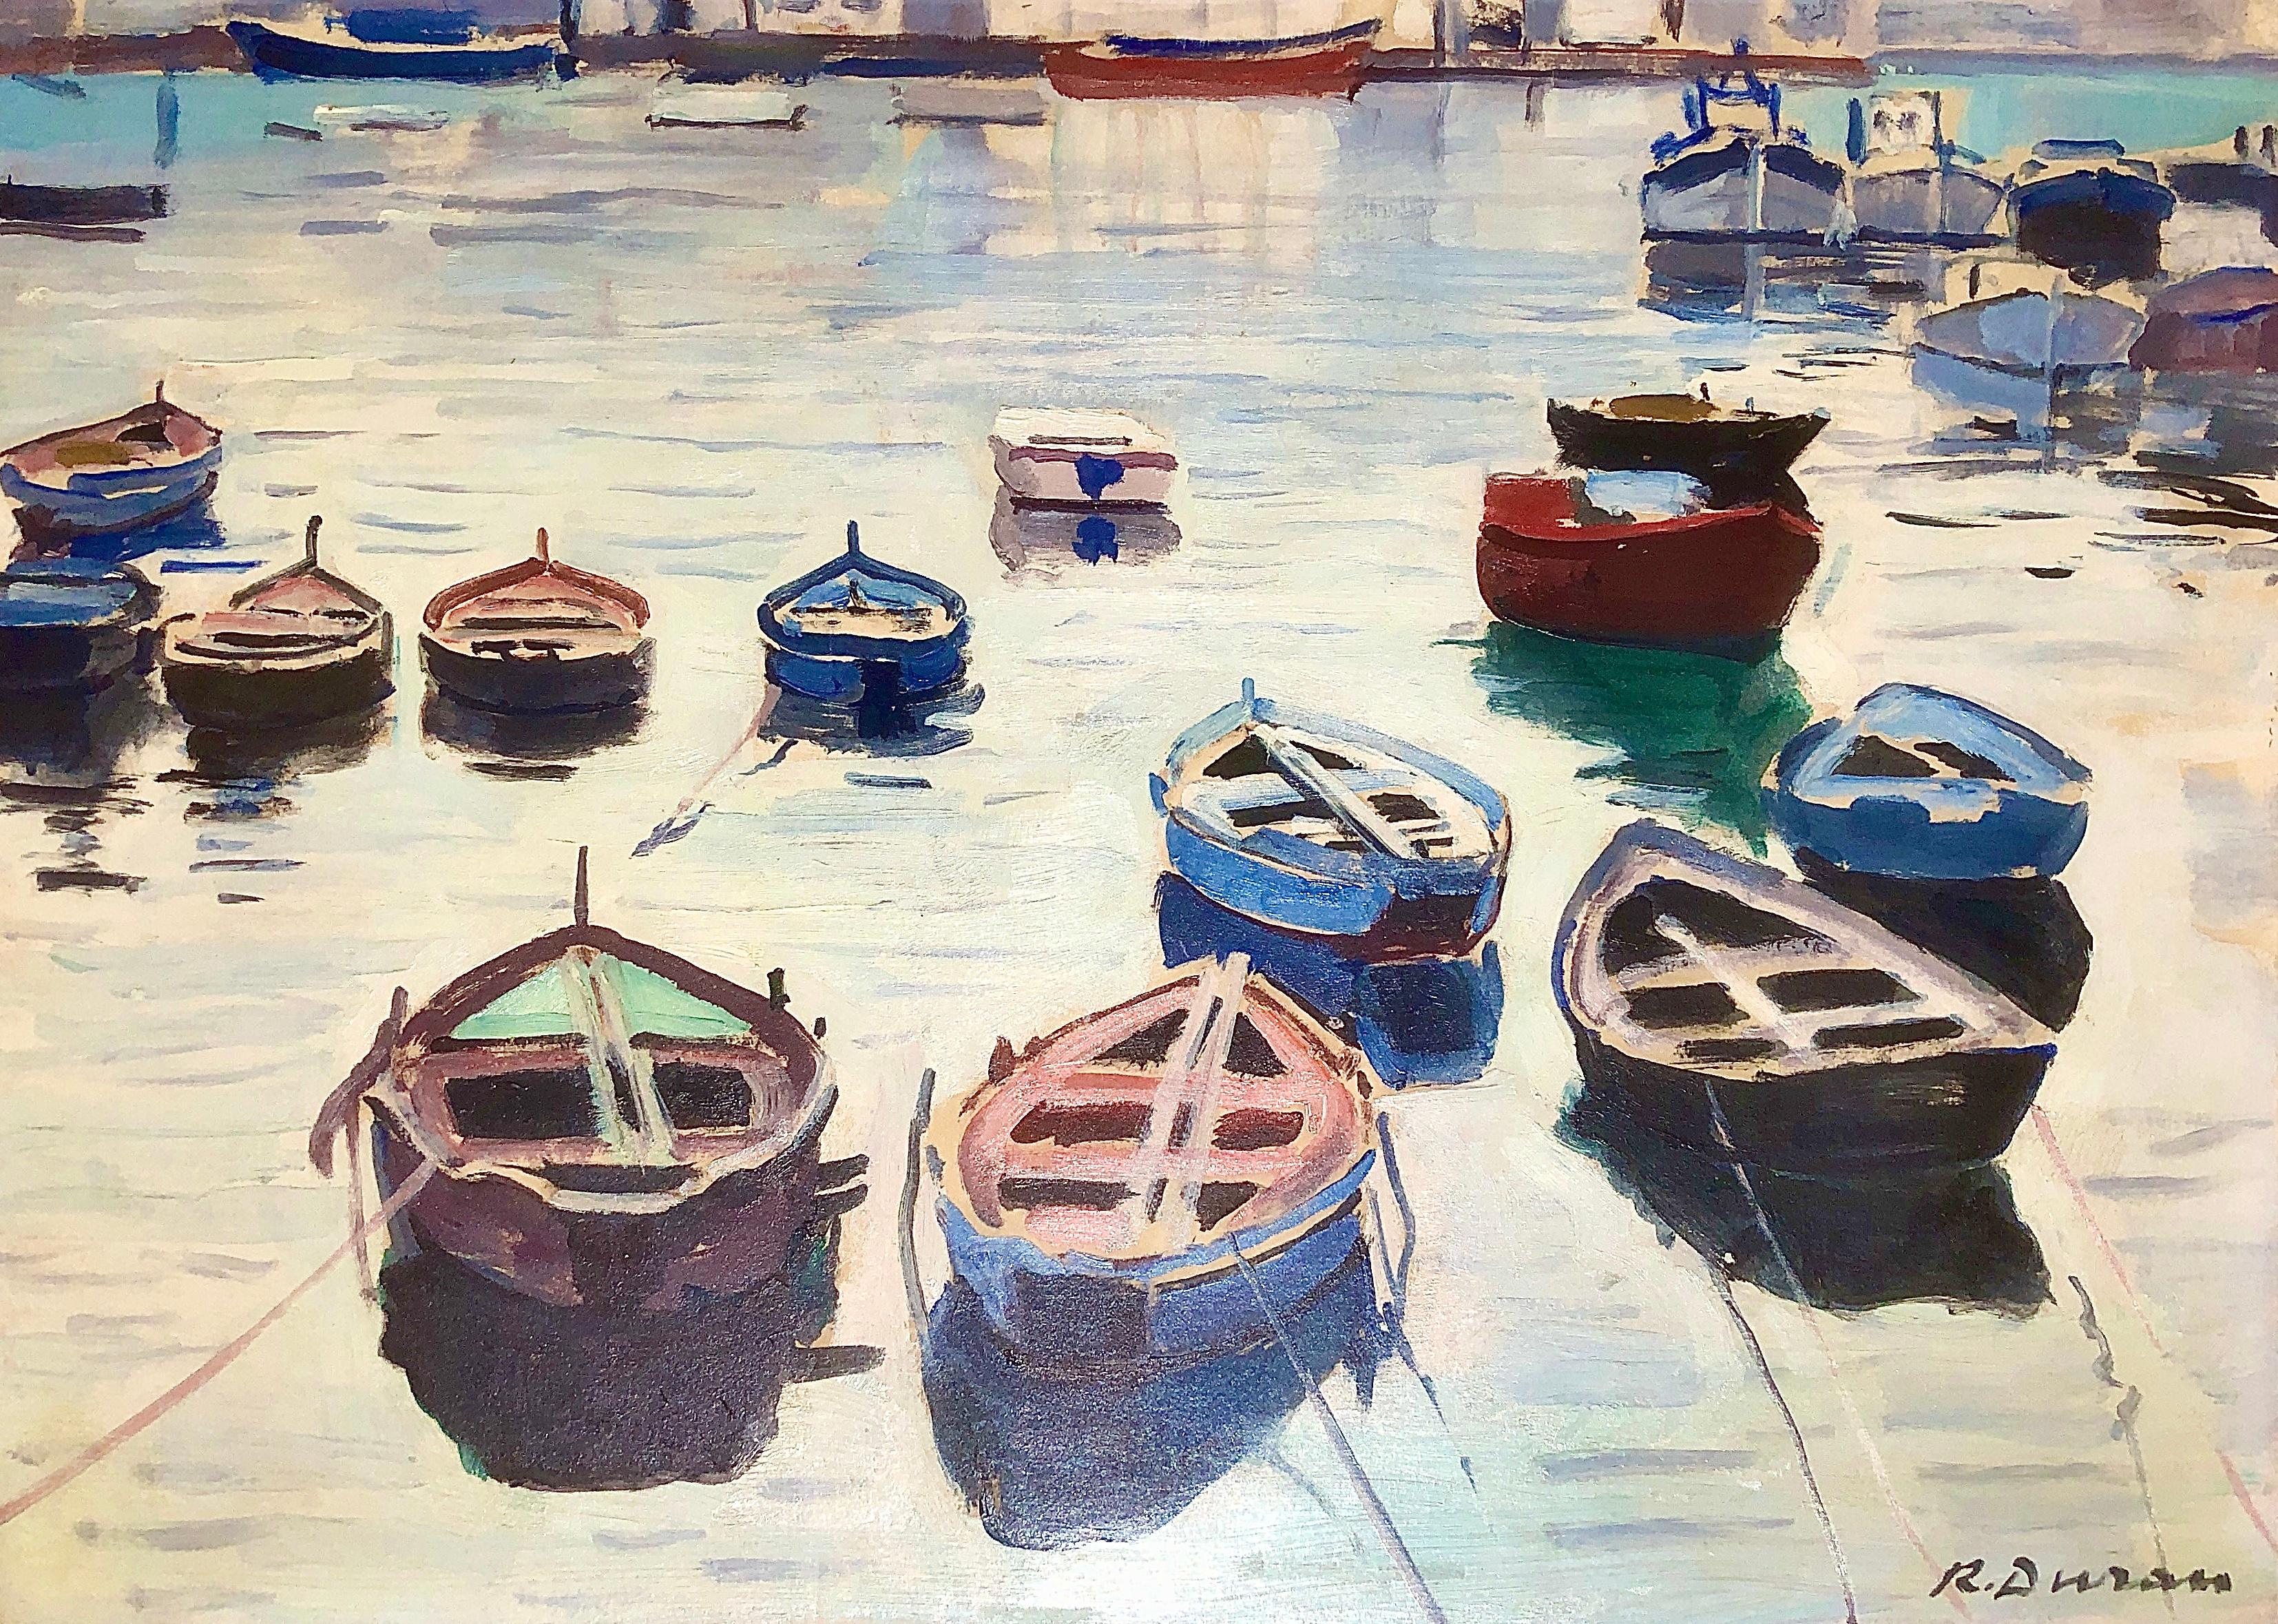 Landscape Painting Rafael Duran Benet - Peinture à l'huile sur toile - Paysage marin espagnol de pêcheurs - Paysage méditerranéen